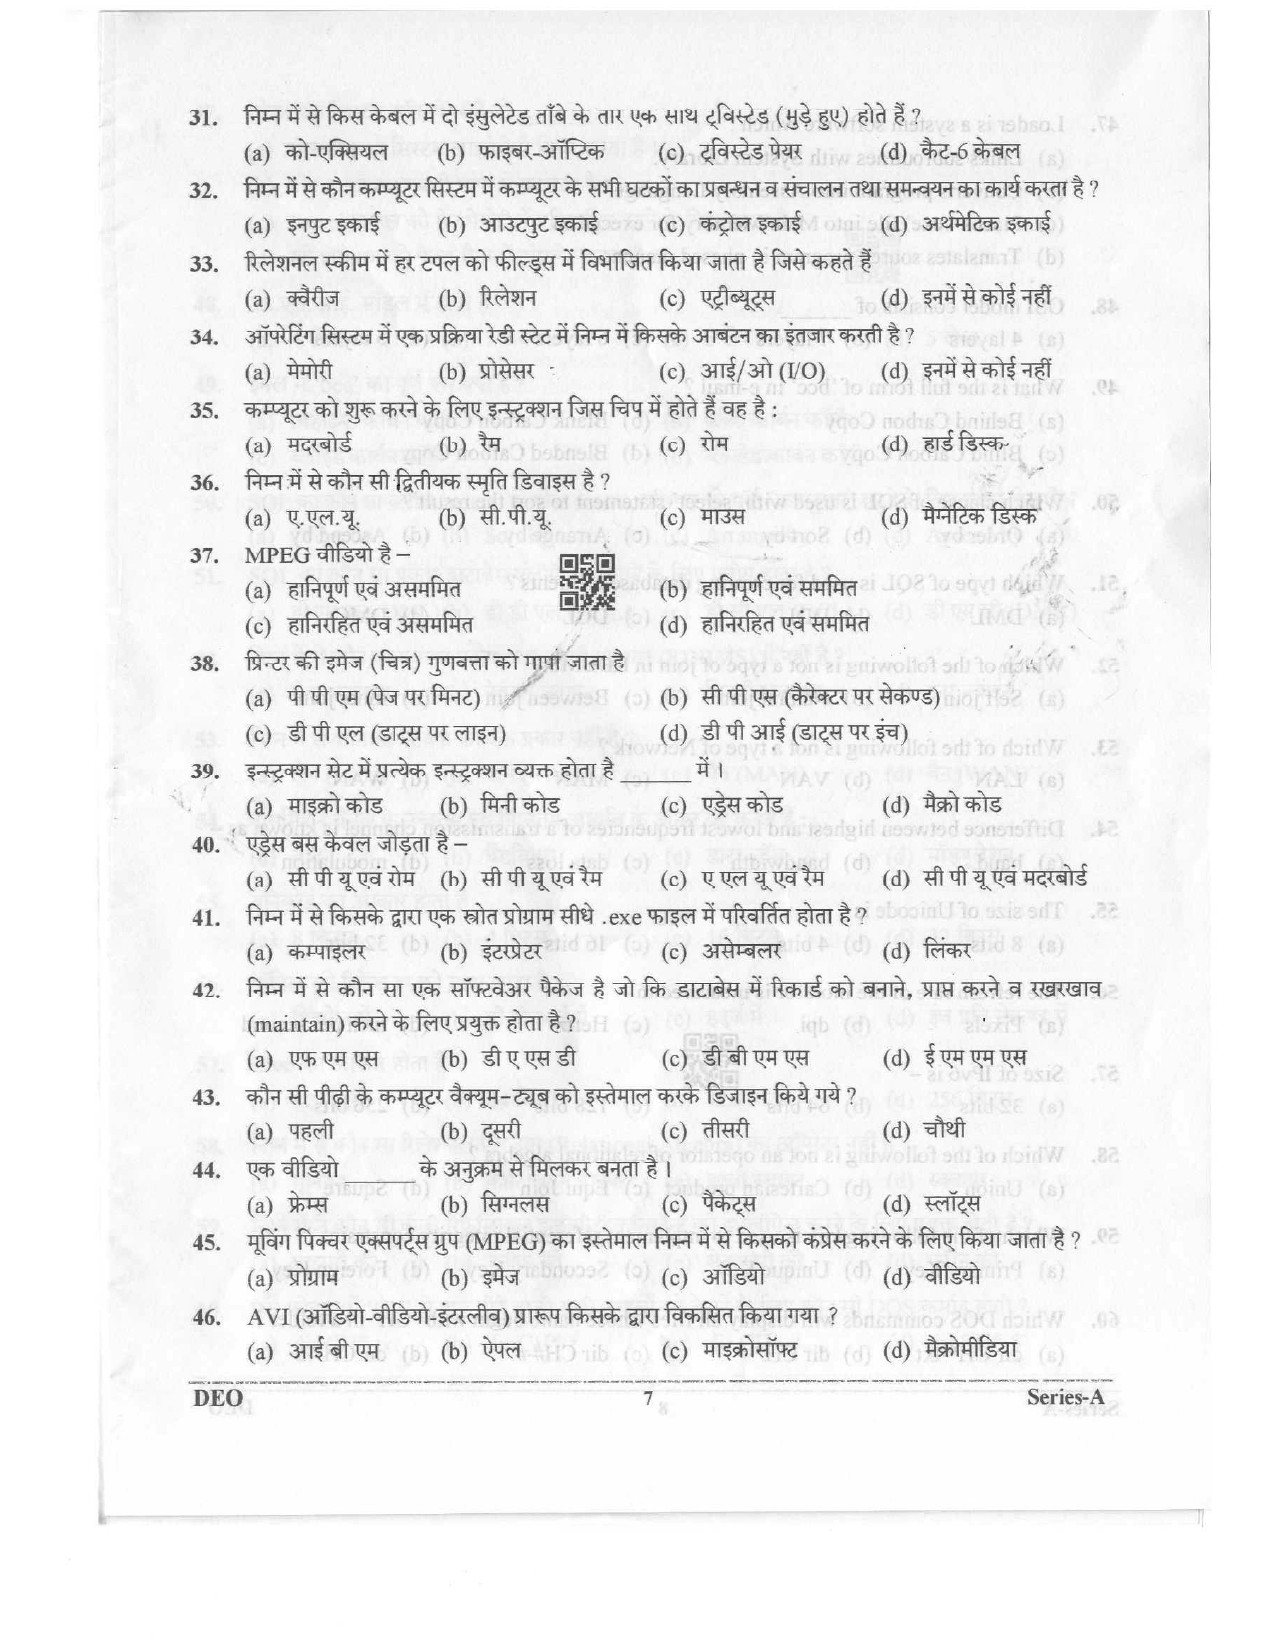 Data Entry Operator Uttarakhand Public Service Commission Exam 2023 6